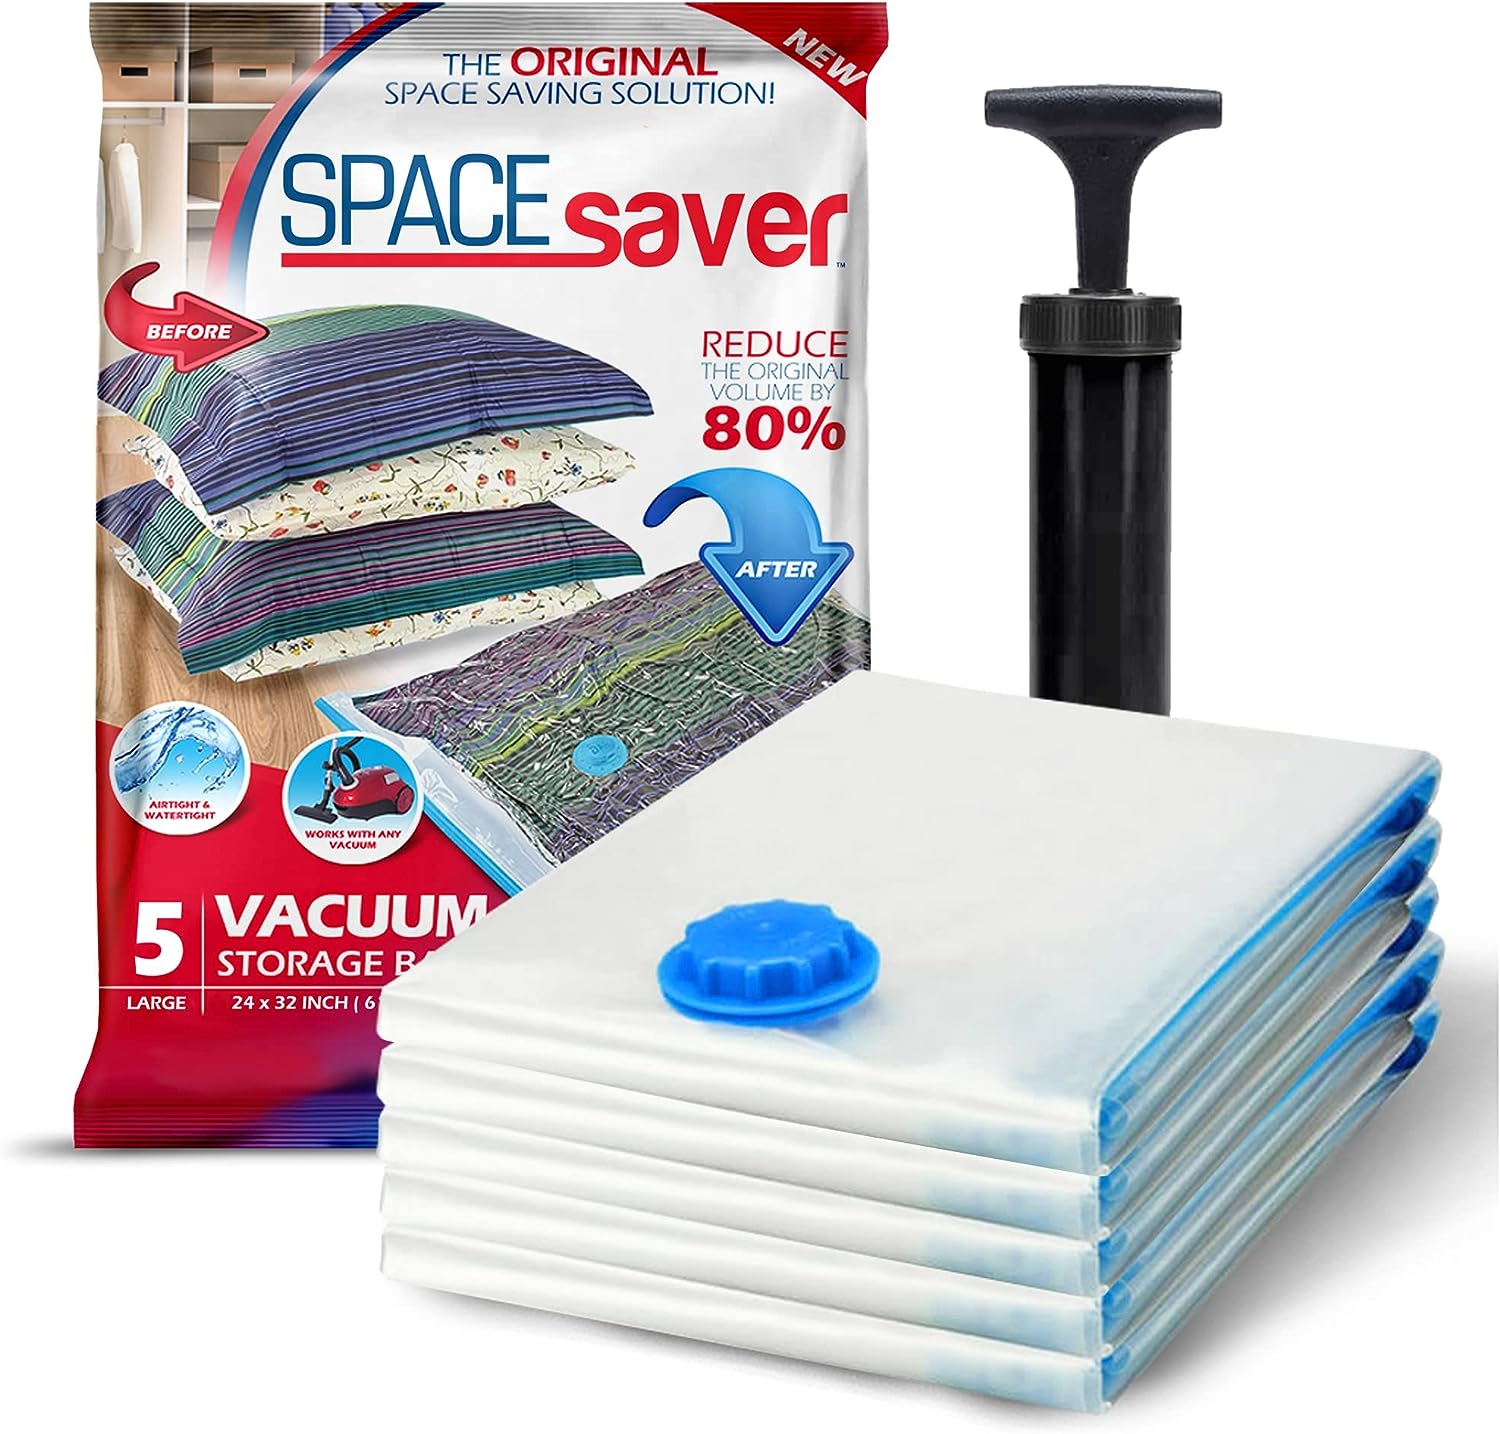 Spacesaver Hochwertige Vakuumbeutel für Kleidung, 80% mehr Stauraum Vakuum Aufbewahrungsbeutel mit Reise Pumpe Doppelreißverschluss und Dreifachdichtung für maximale Platzersparnis Groß 5 Pack